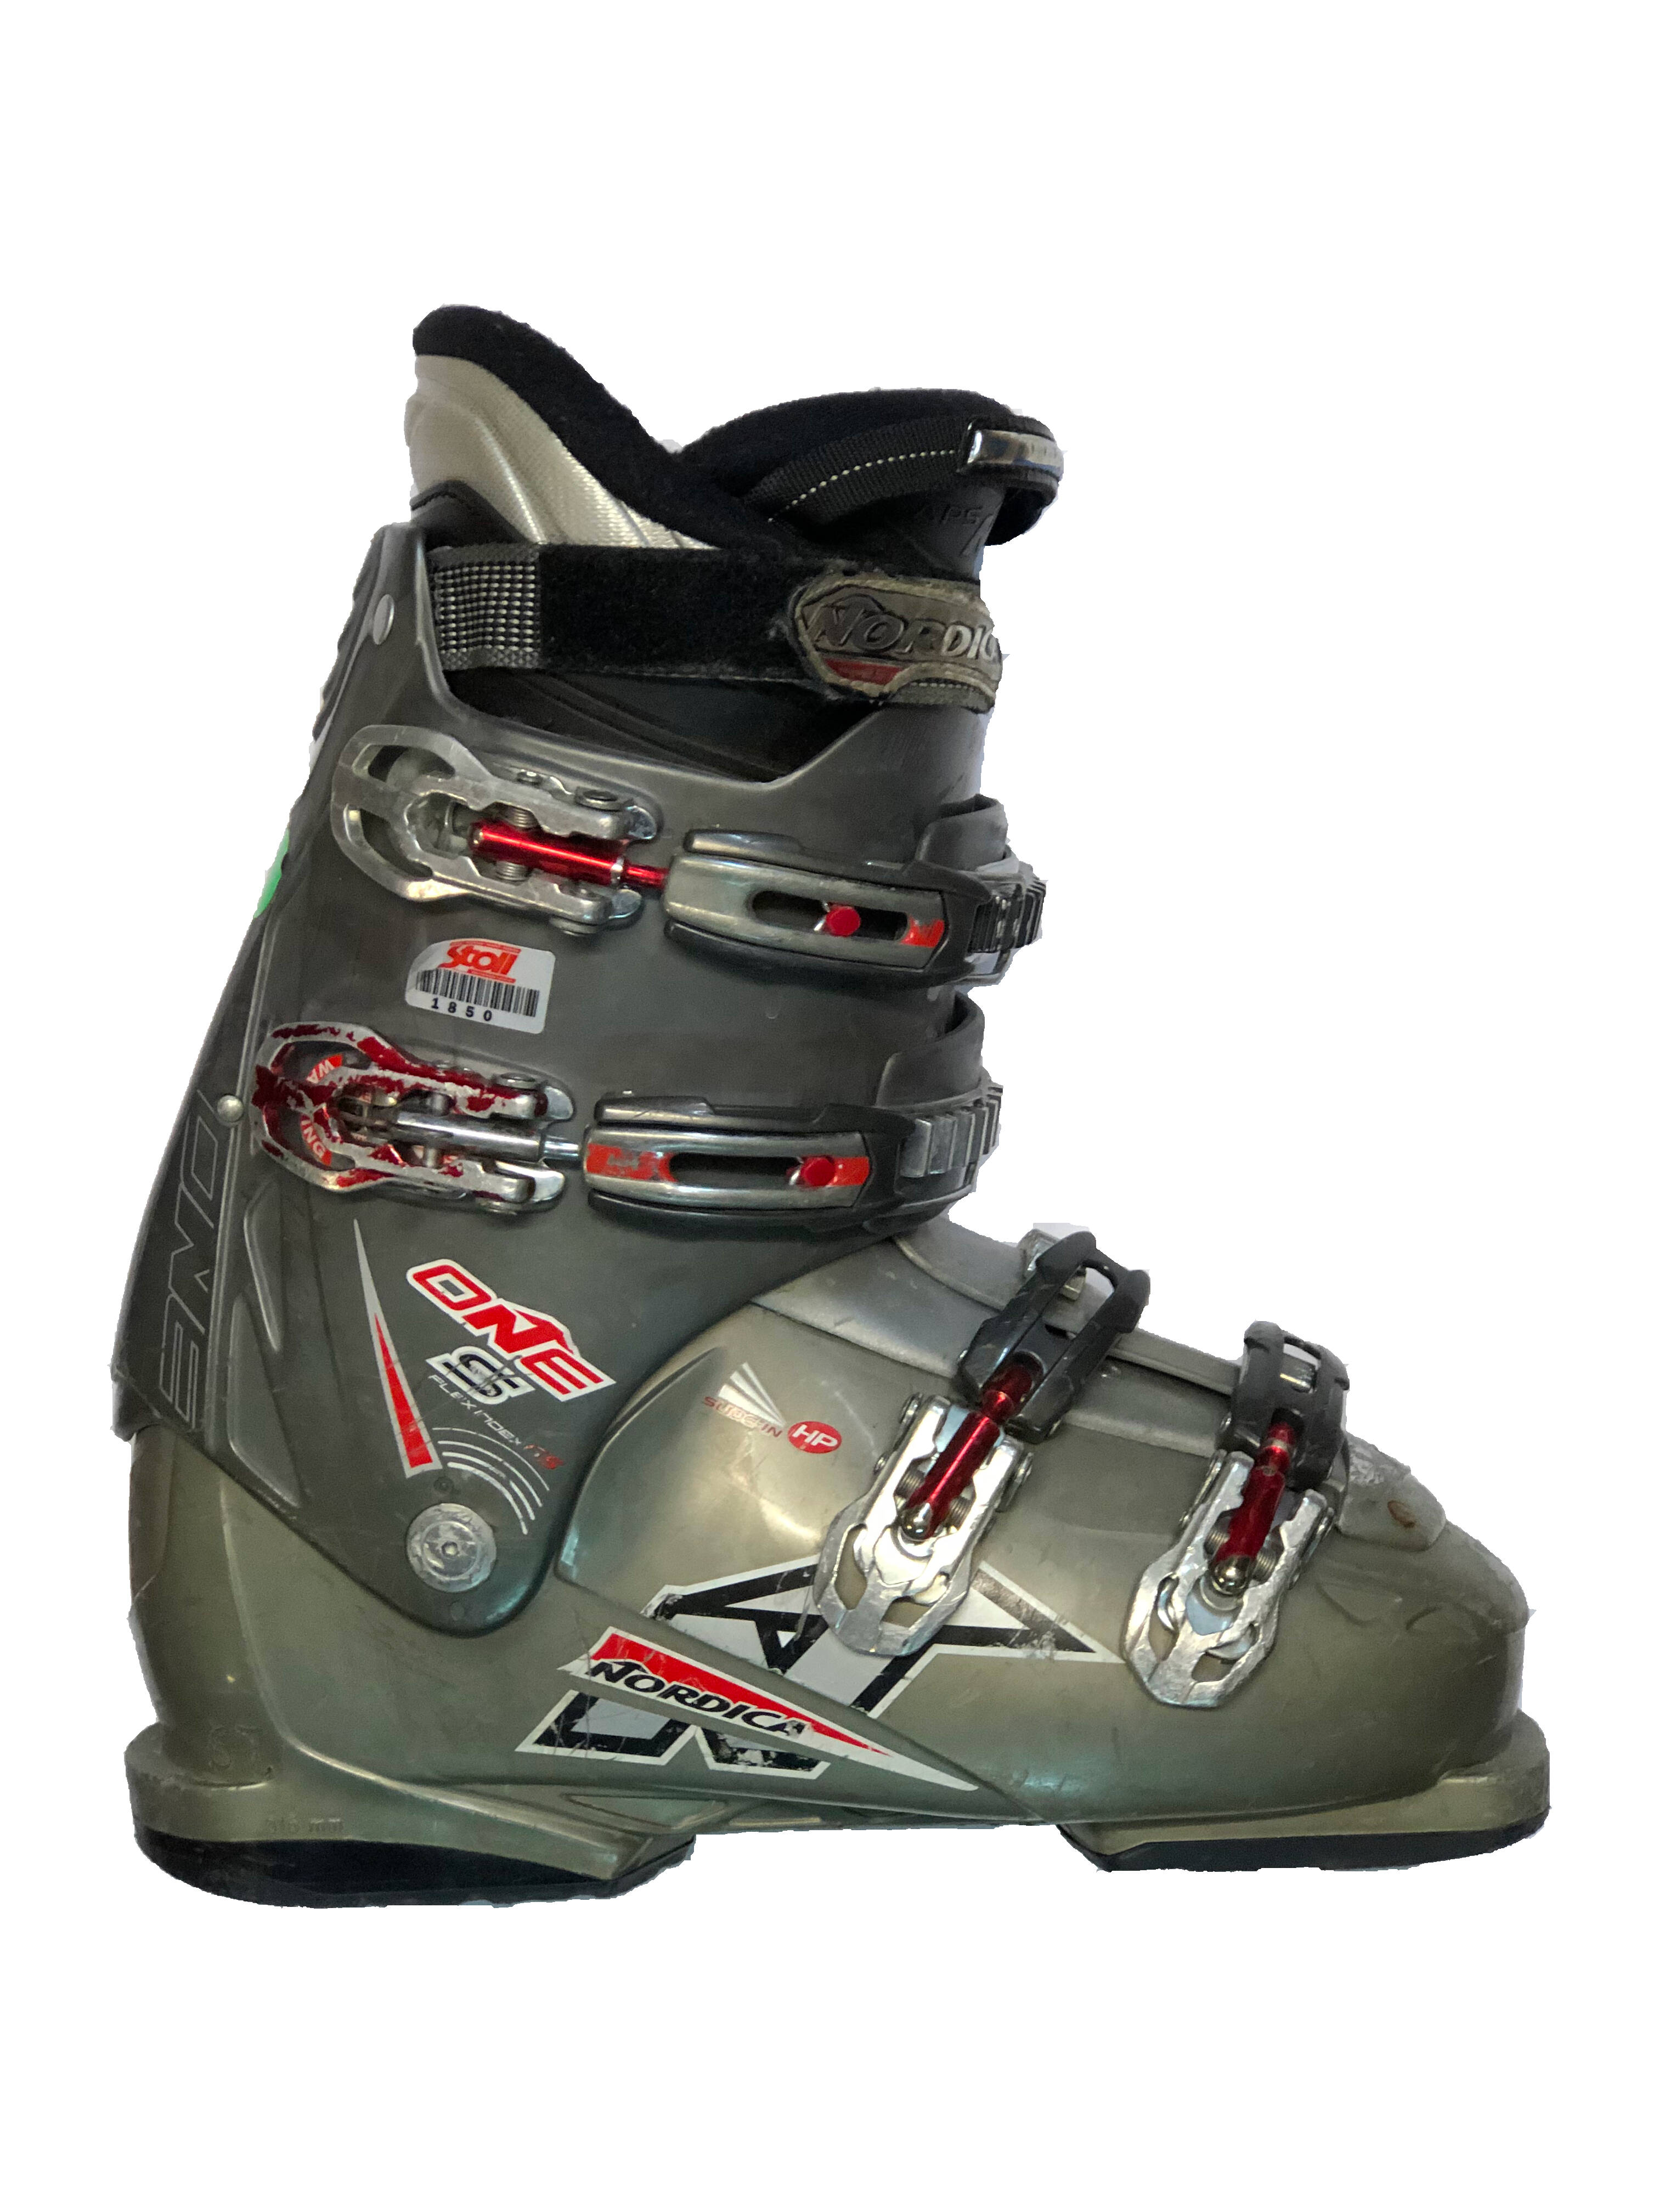 Używane buty narciarskie Nordica 28,0 / 325mm rozmiar 43 :: Sklep Sportowy  - outlet sportowy, koncówki kolekcji, wyprzedaże, narty, deski, wiązania,  sprzet narciarski, buty sportowe